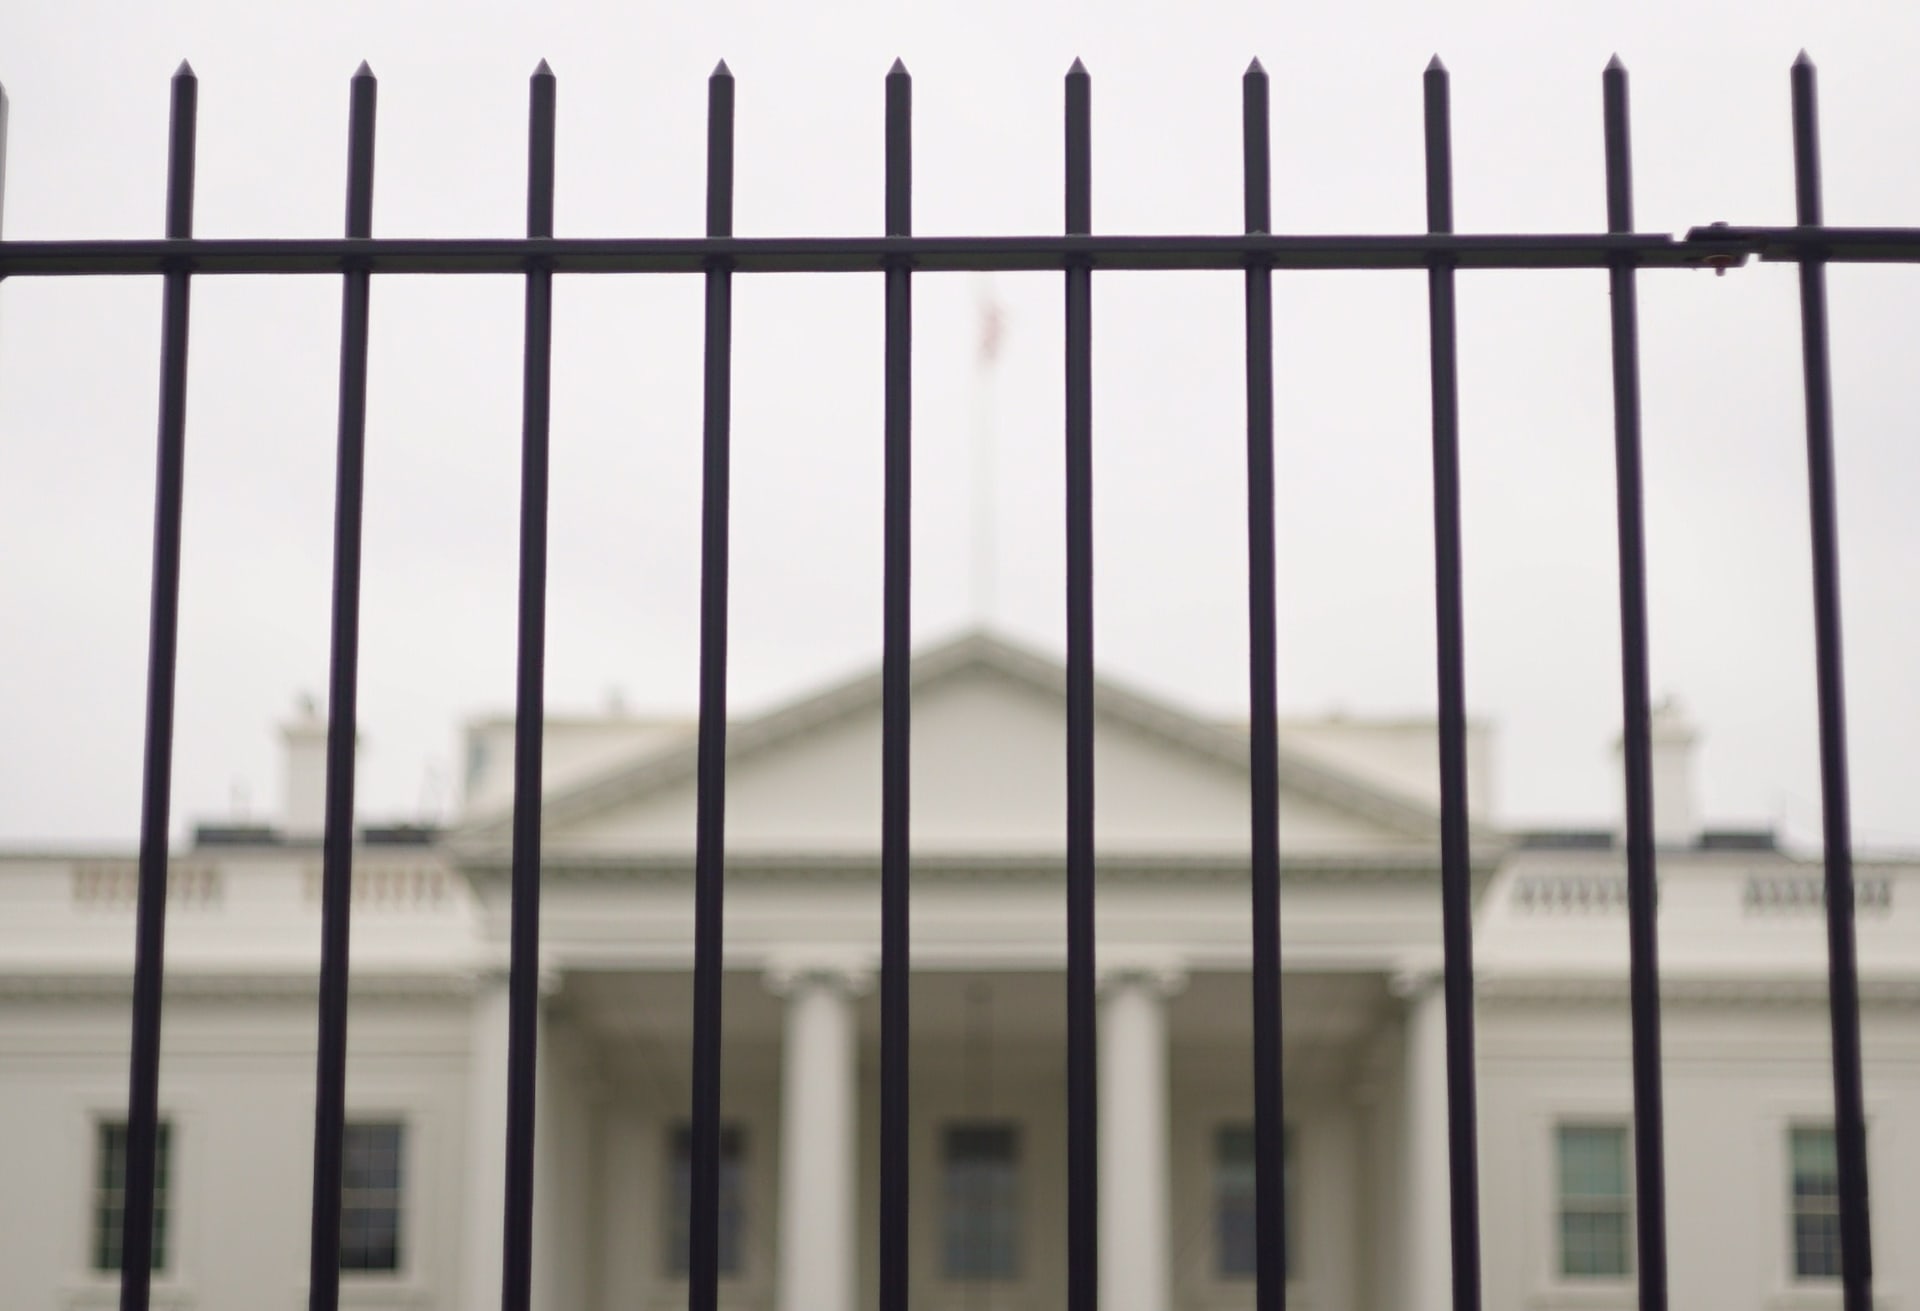 الخدمة السرية الأمريكية تطالب بأسوار "أعلى وأقوى" حول البيت الأبيض.. لماذا؟